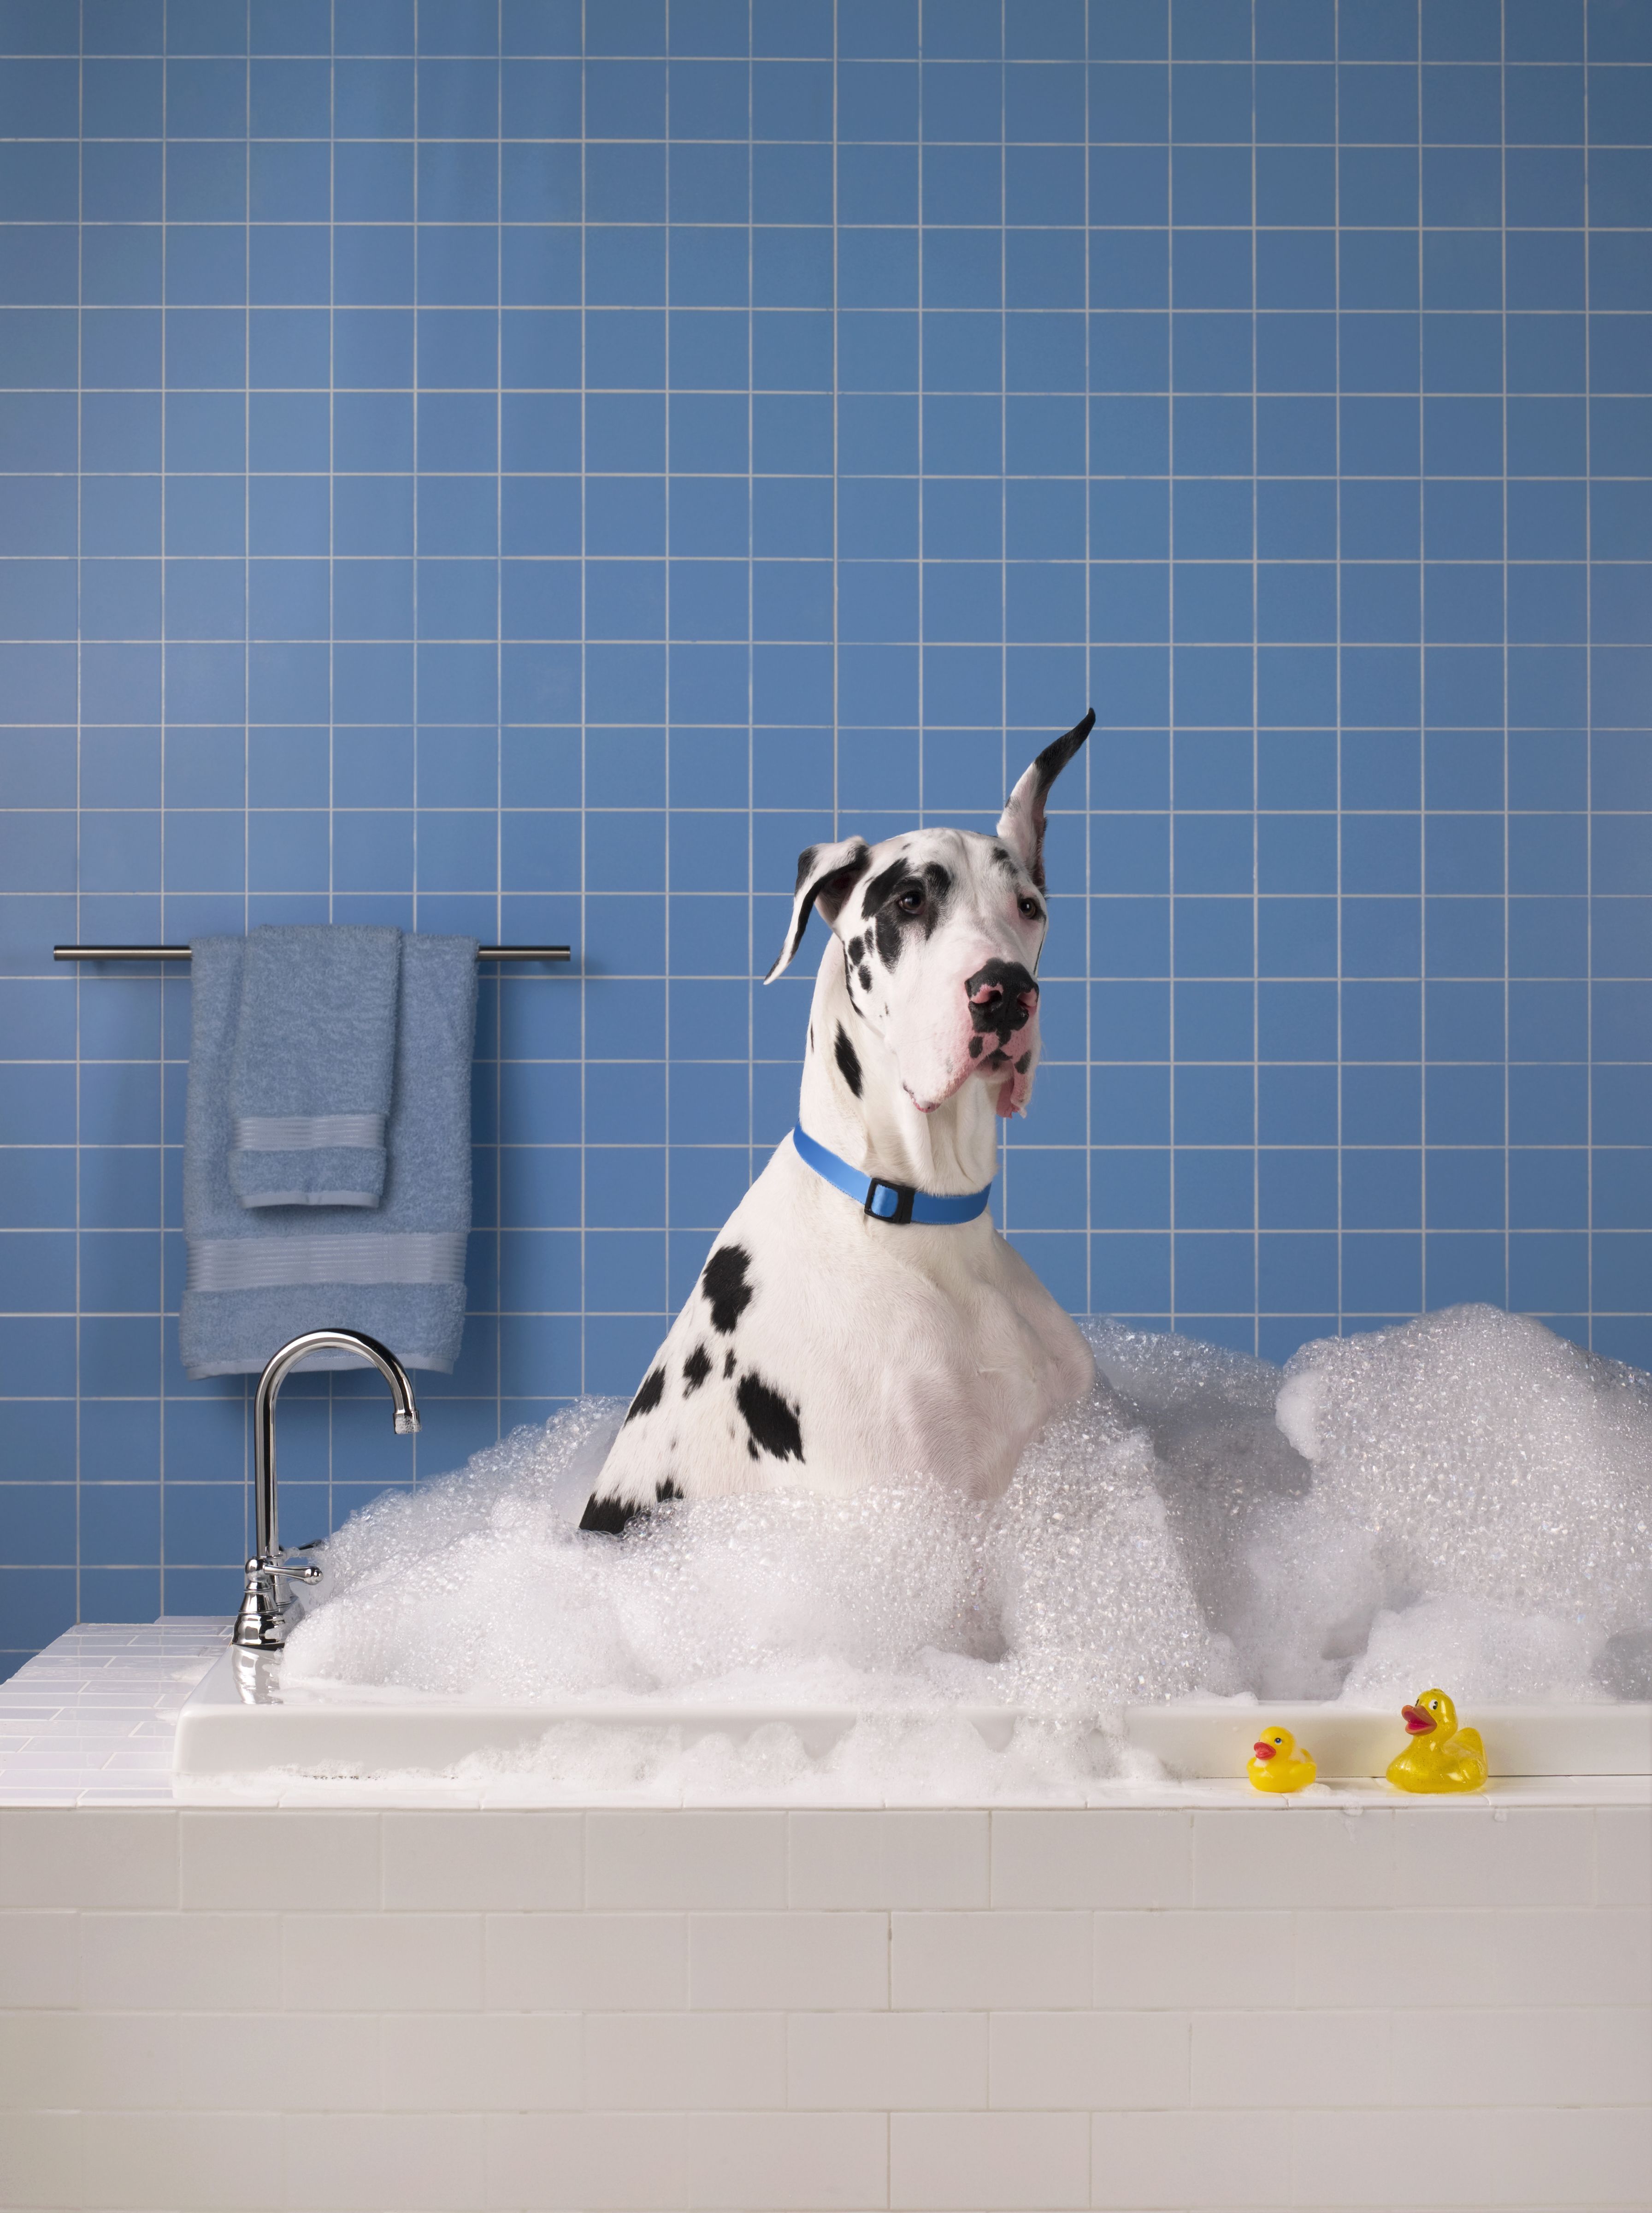 best flea shampoo for dogs uk